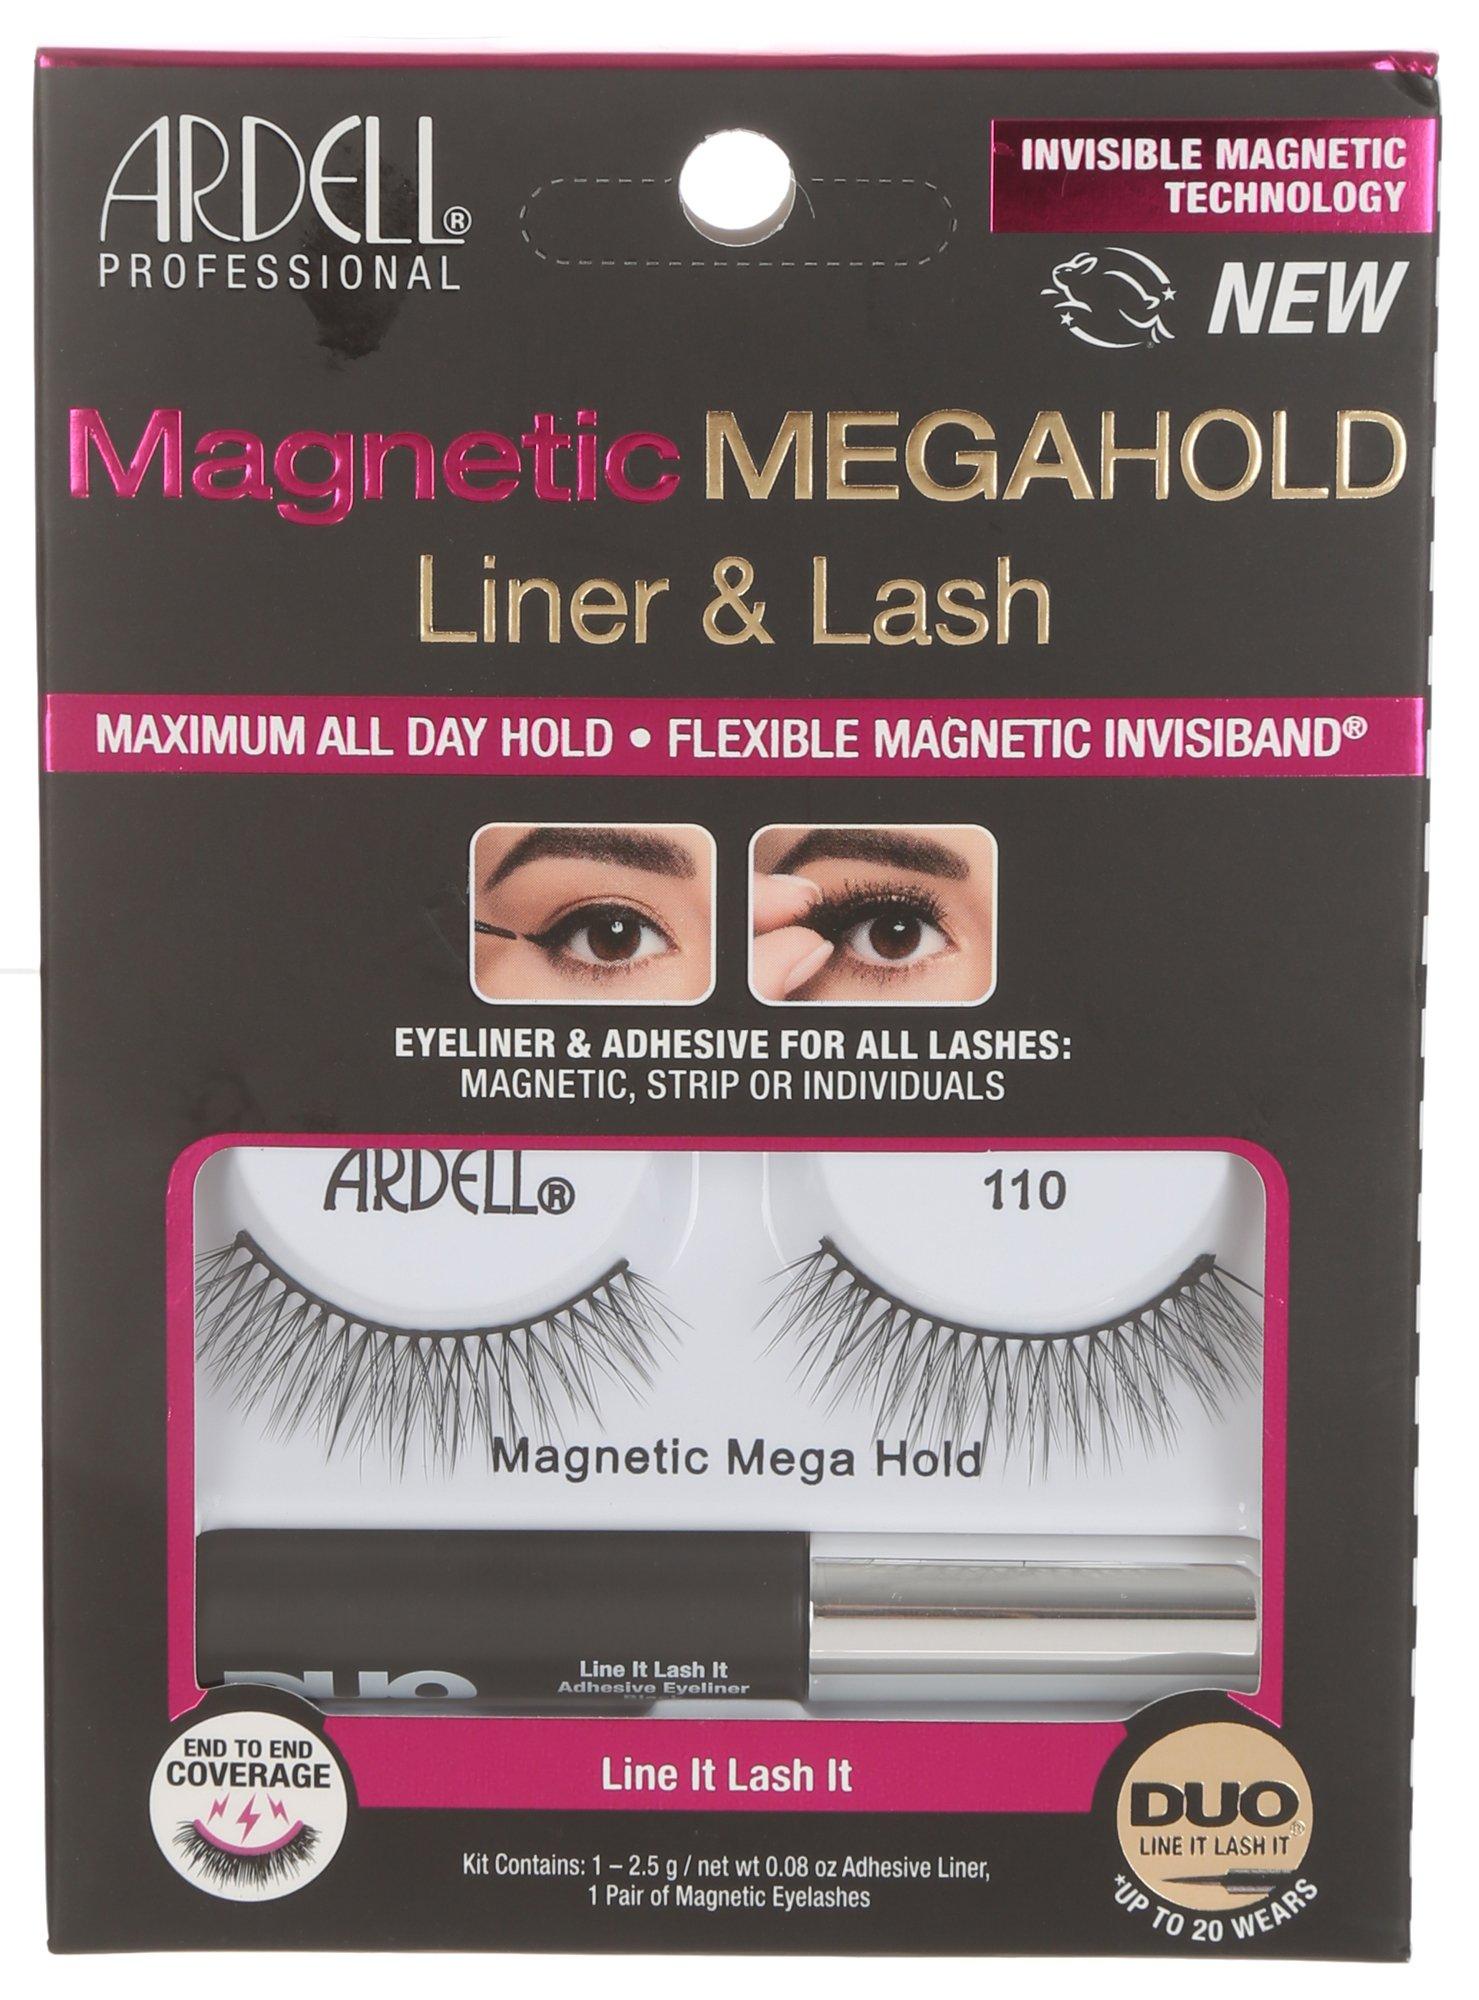 Magnetic Megahold Liner & Lash Set